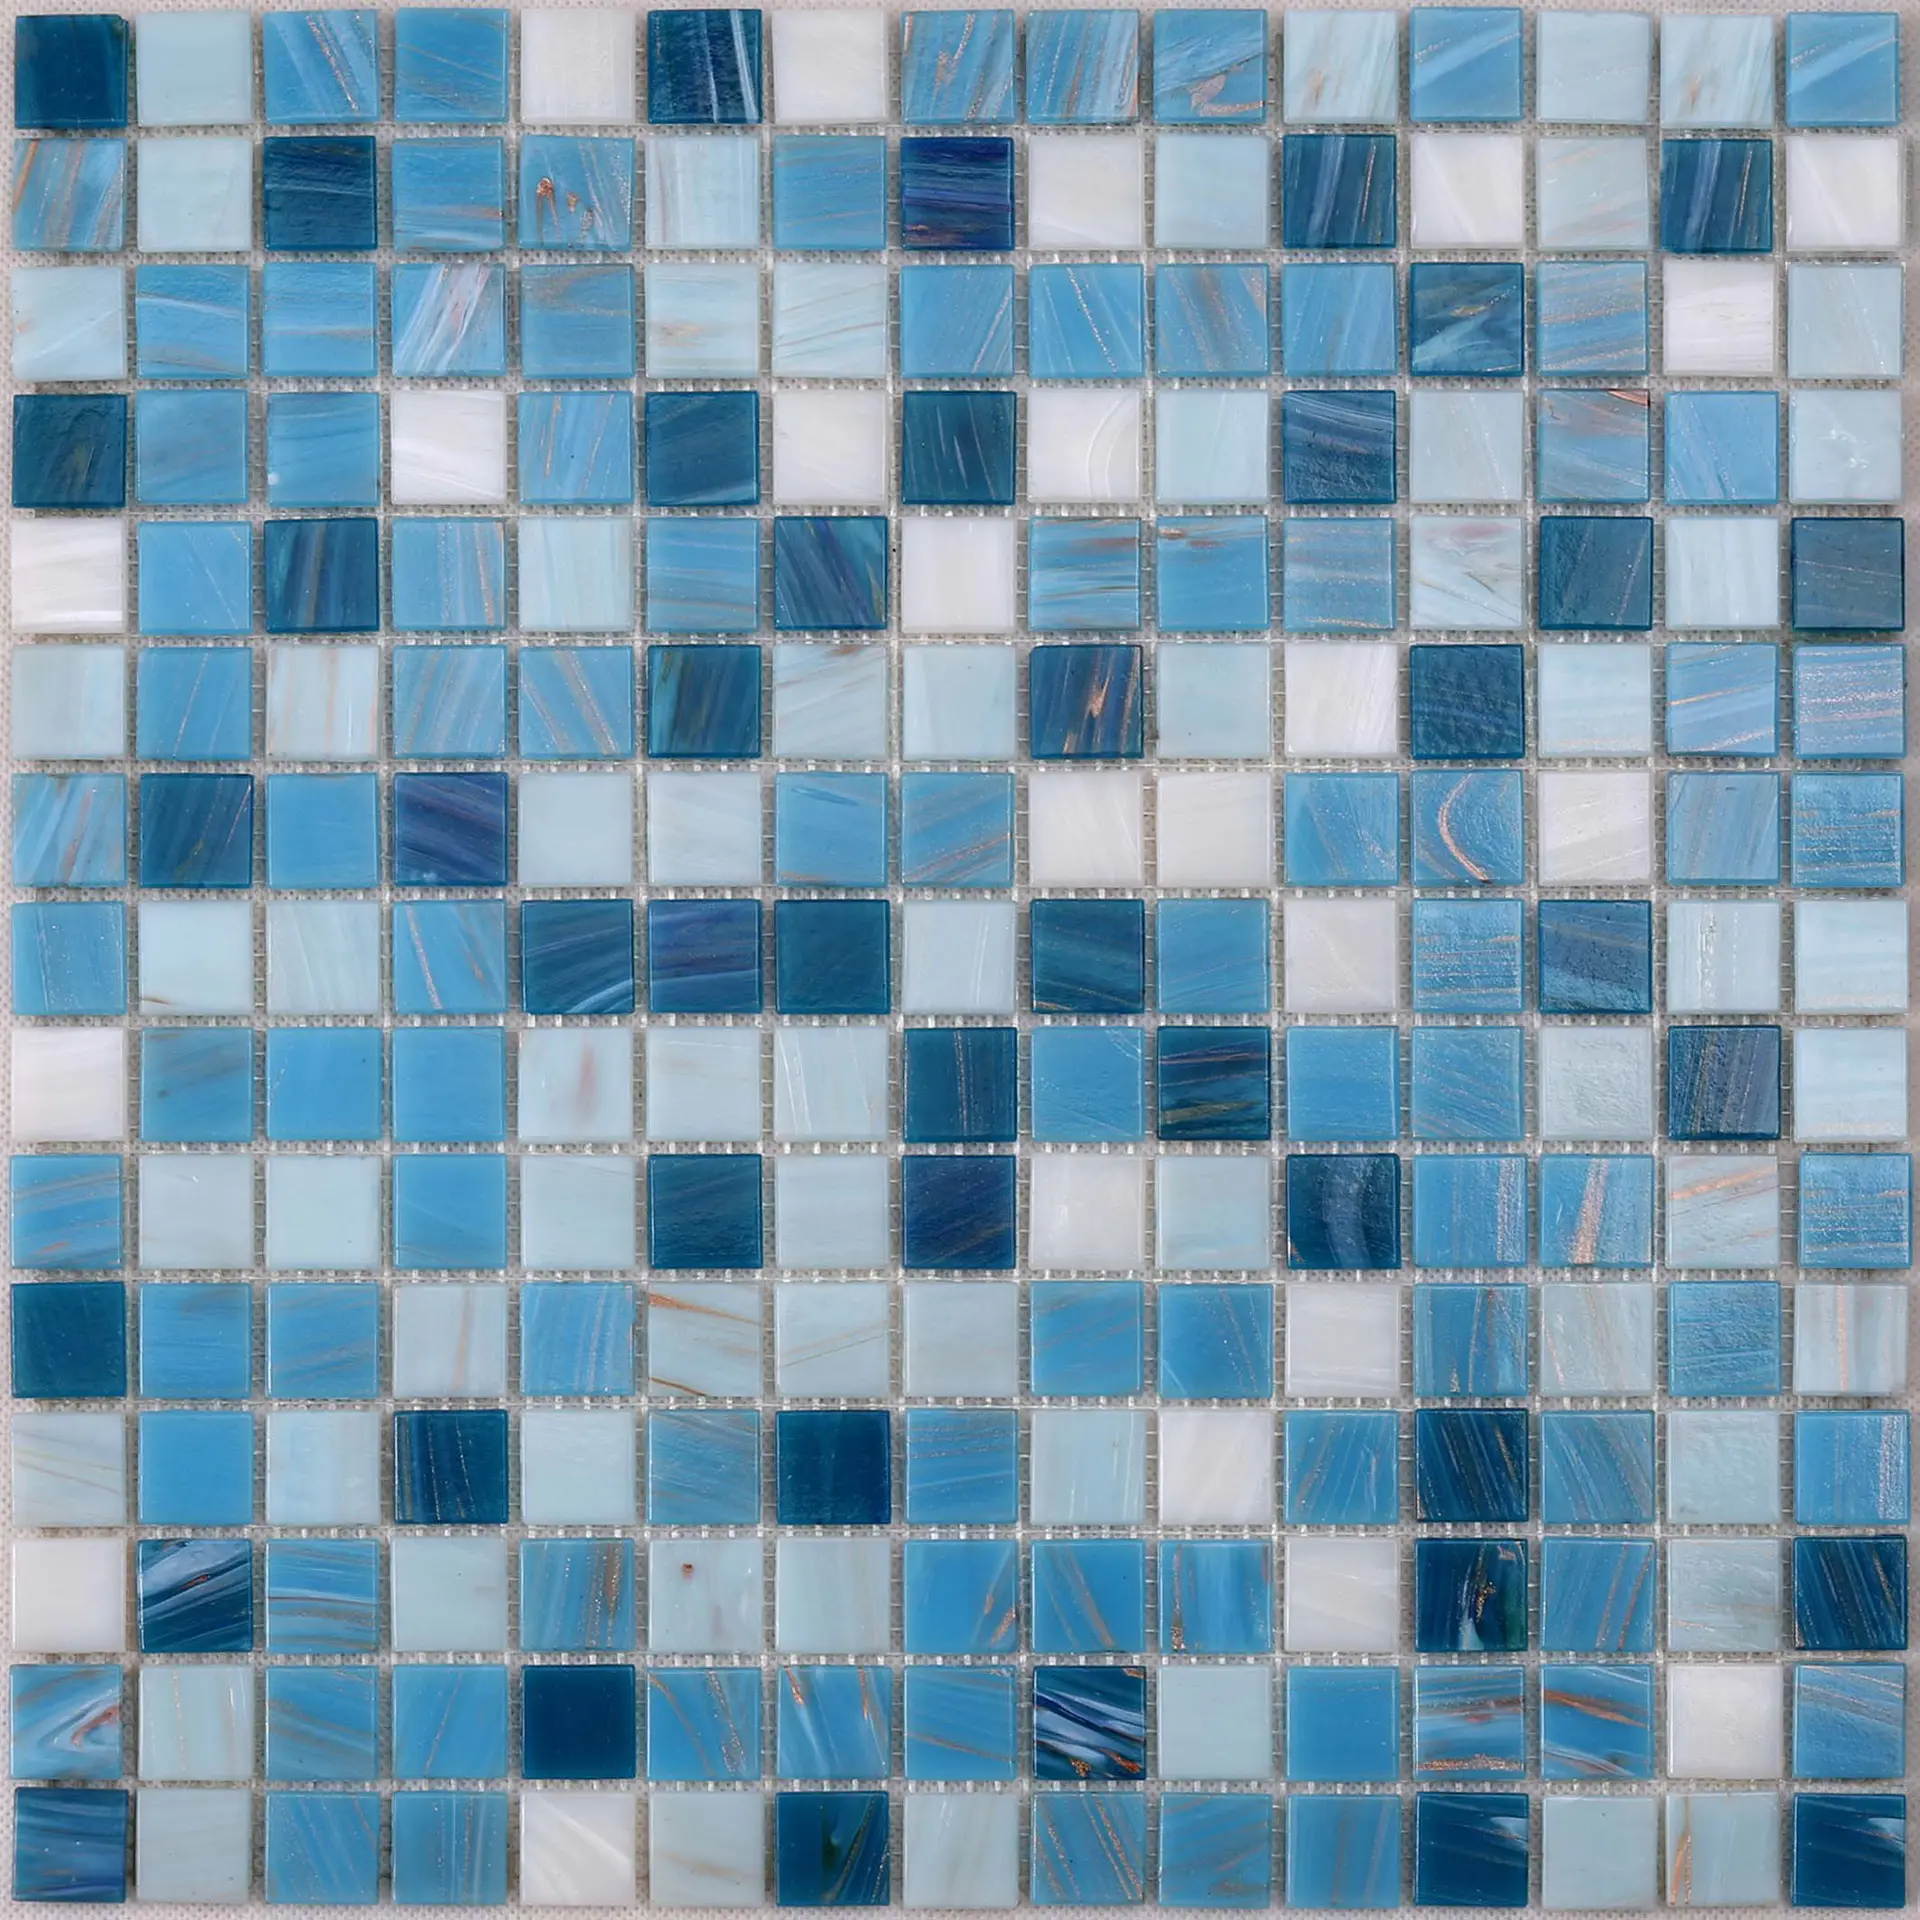 Custom pool tiles blue for business for spa